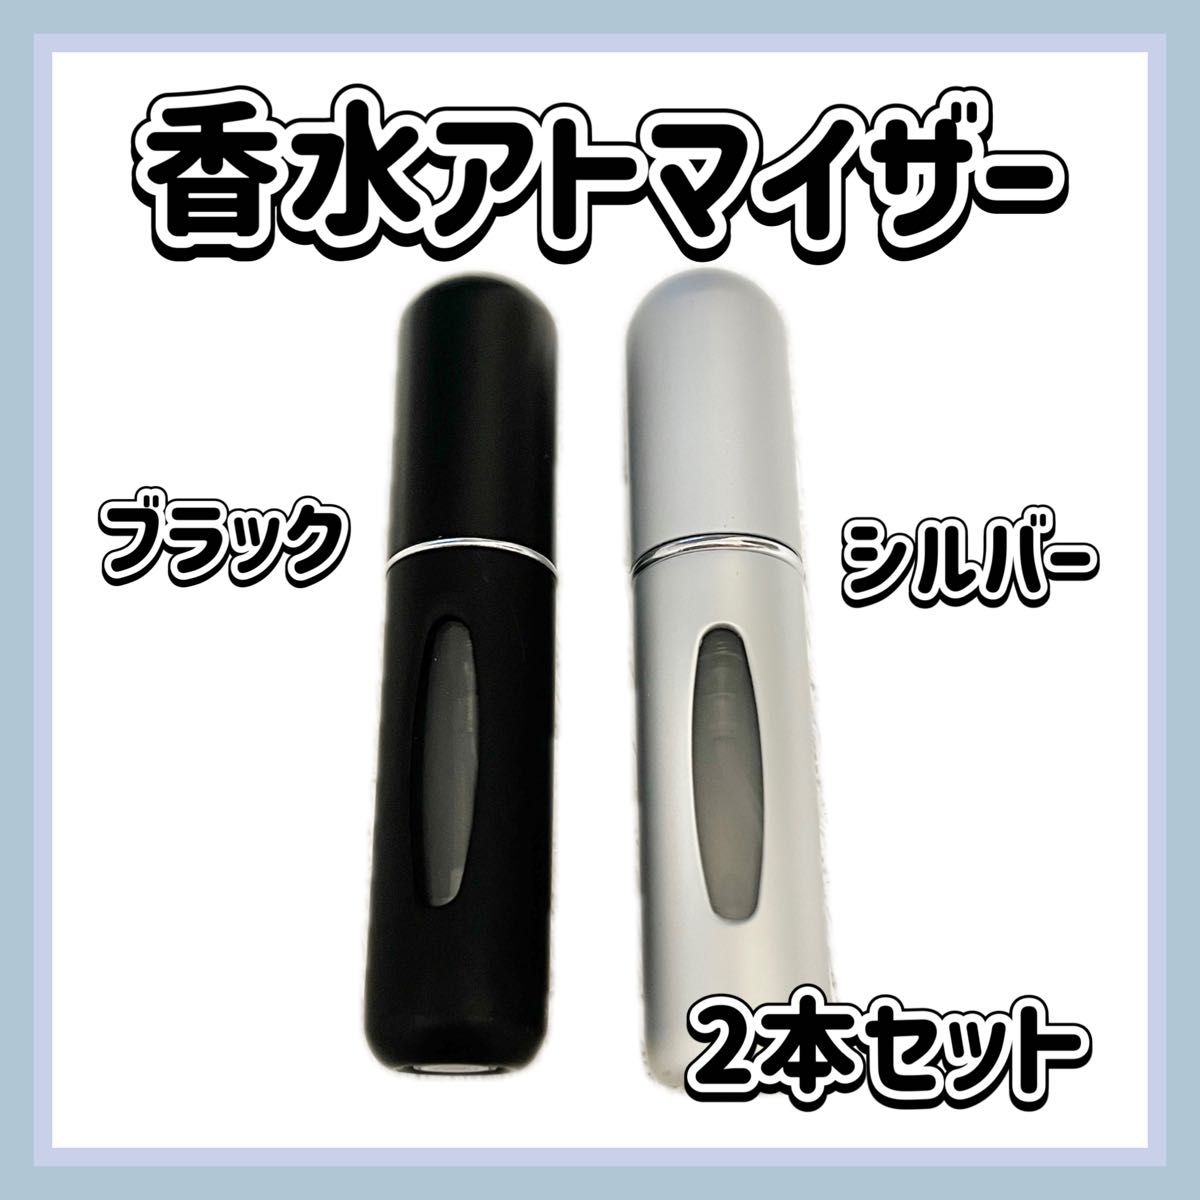 香水 詰め替え アトマイザー 黒 シルバー ギフト 2本セット 軽い 携帯用 旅行 クイックアトマイザー 持ち運び 軽量 簡単